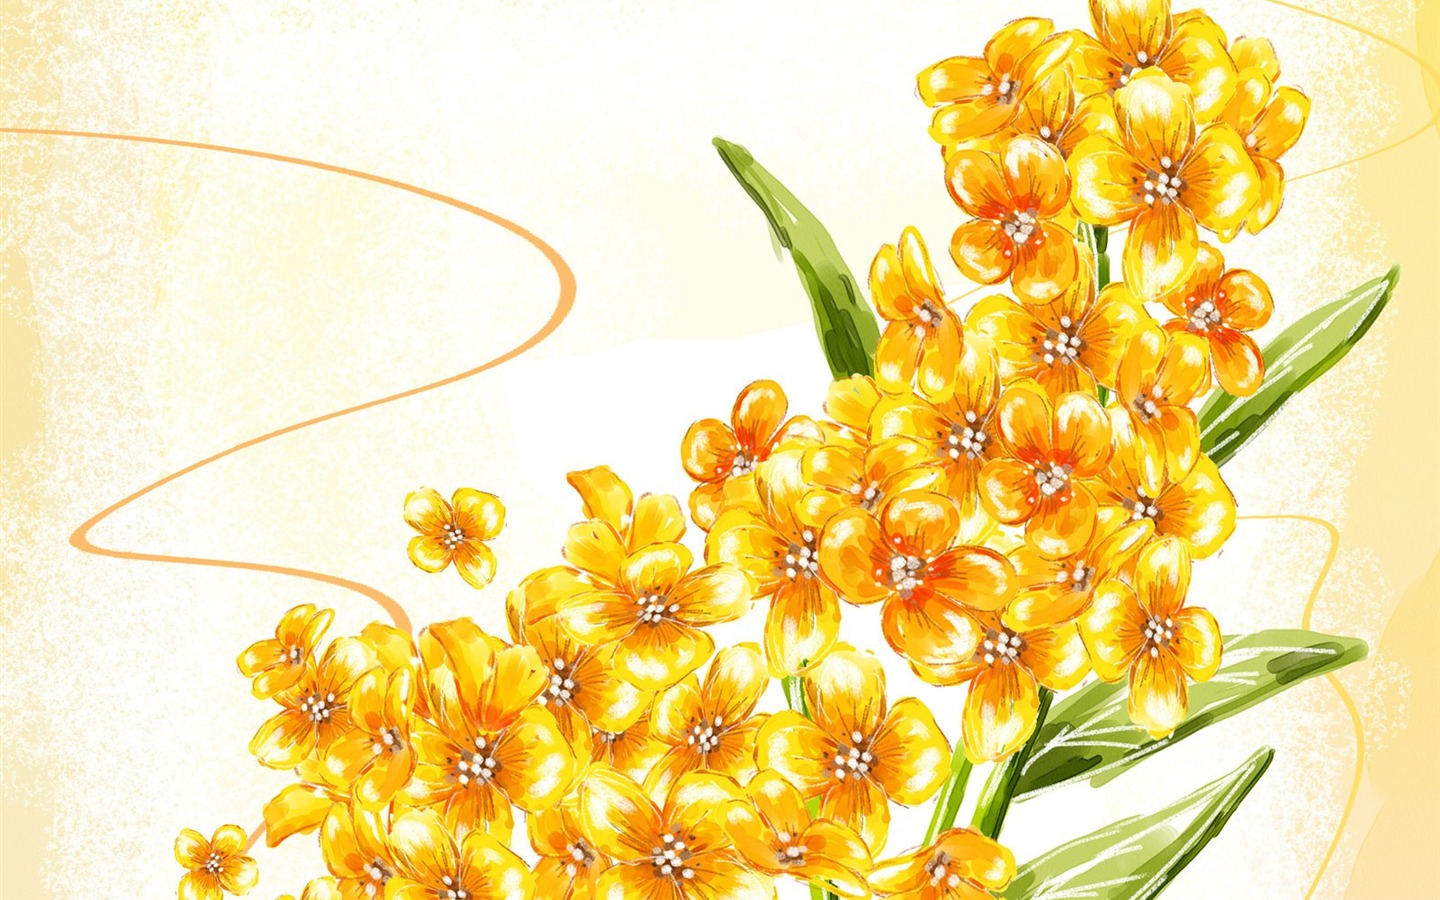 Floral wallpaper illustration design #28 - 1440x900